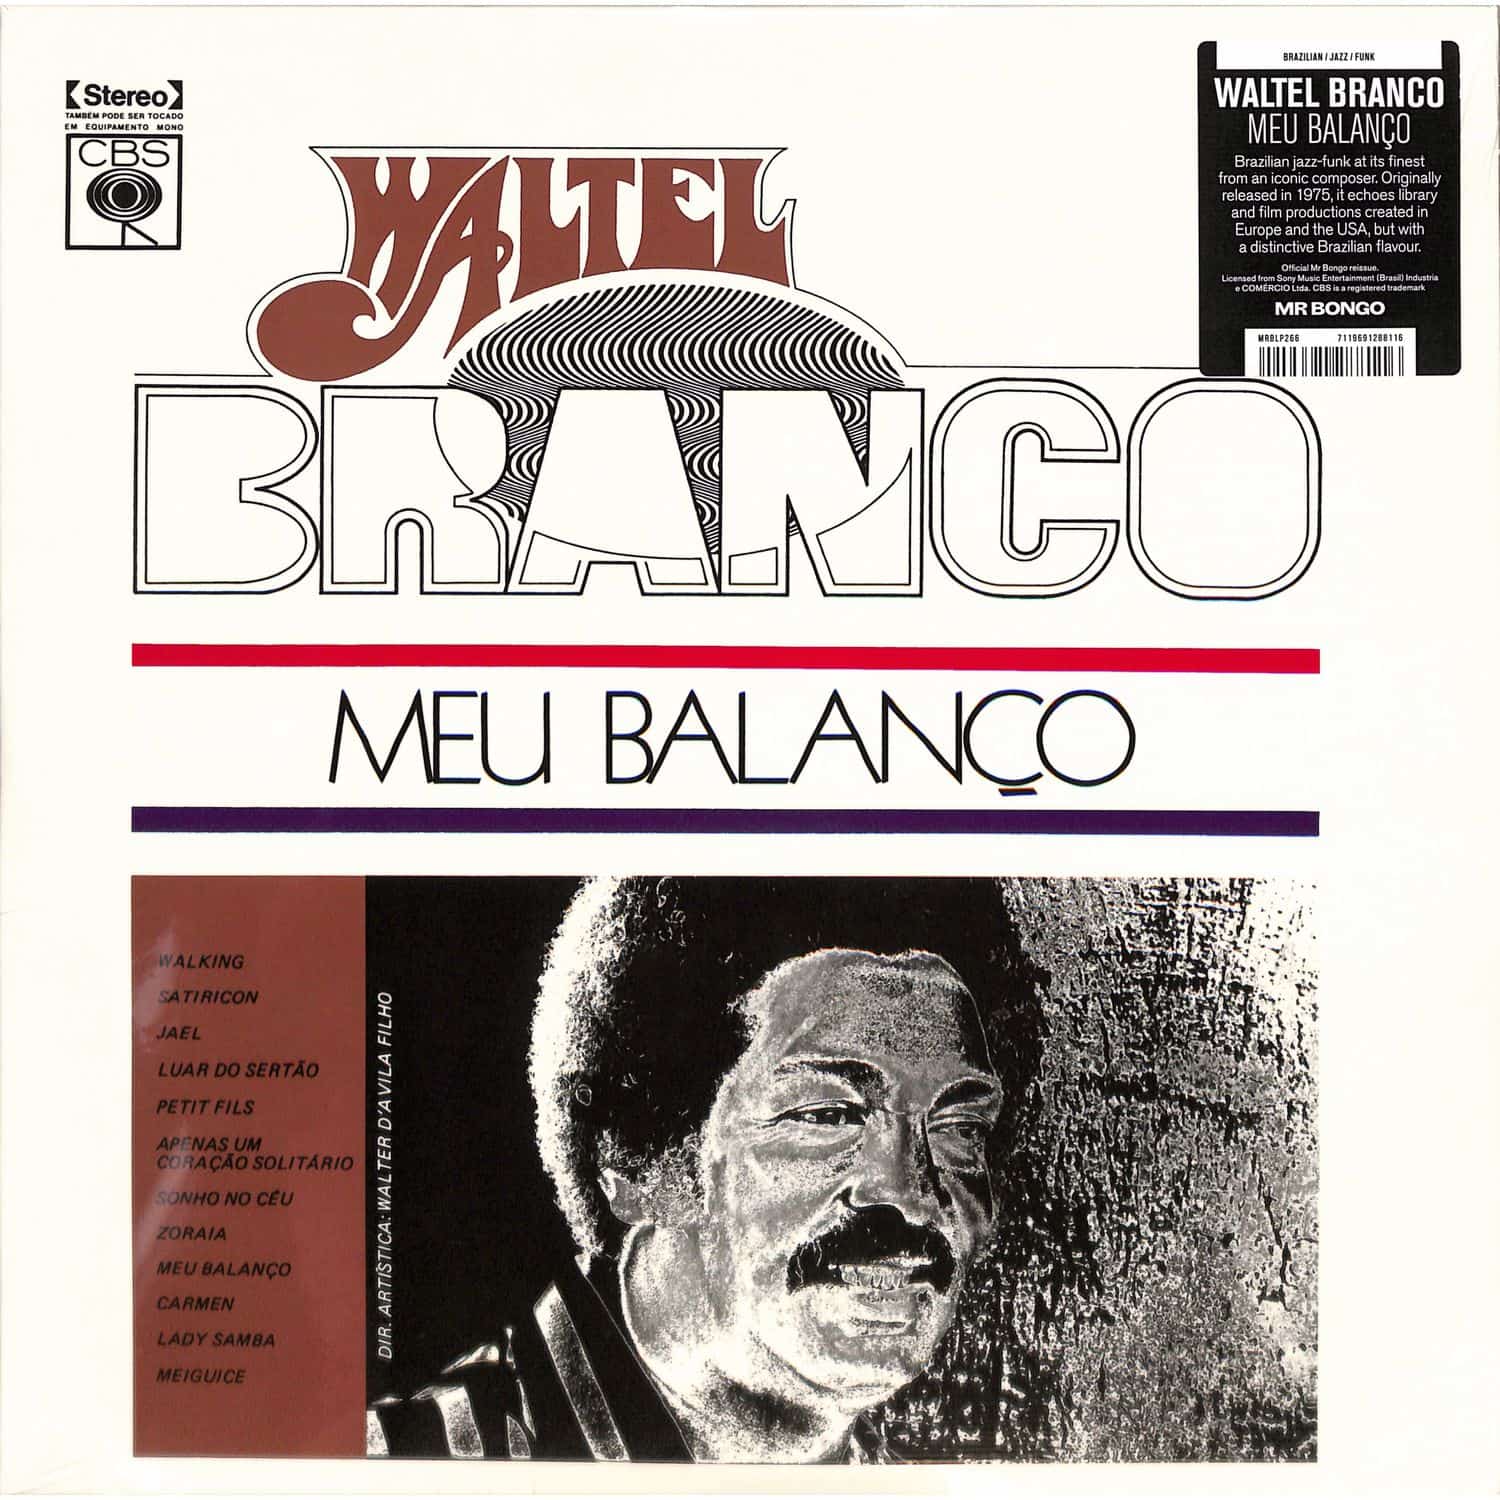 Waltel Branco - MEU BALANCO 